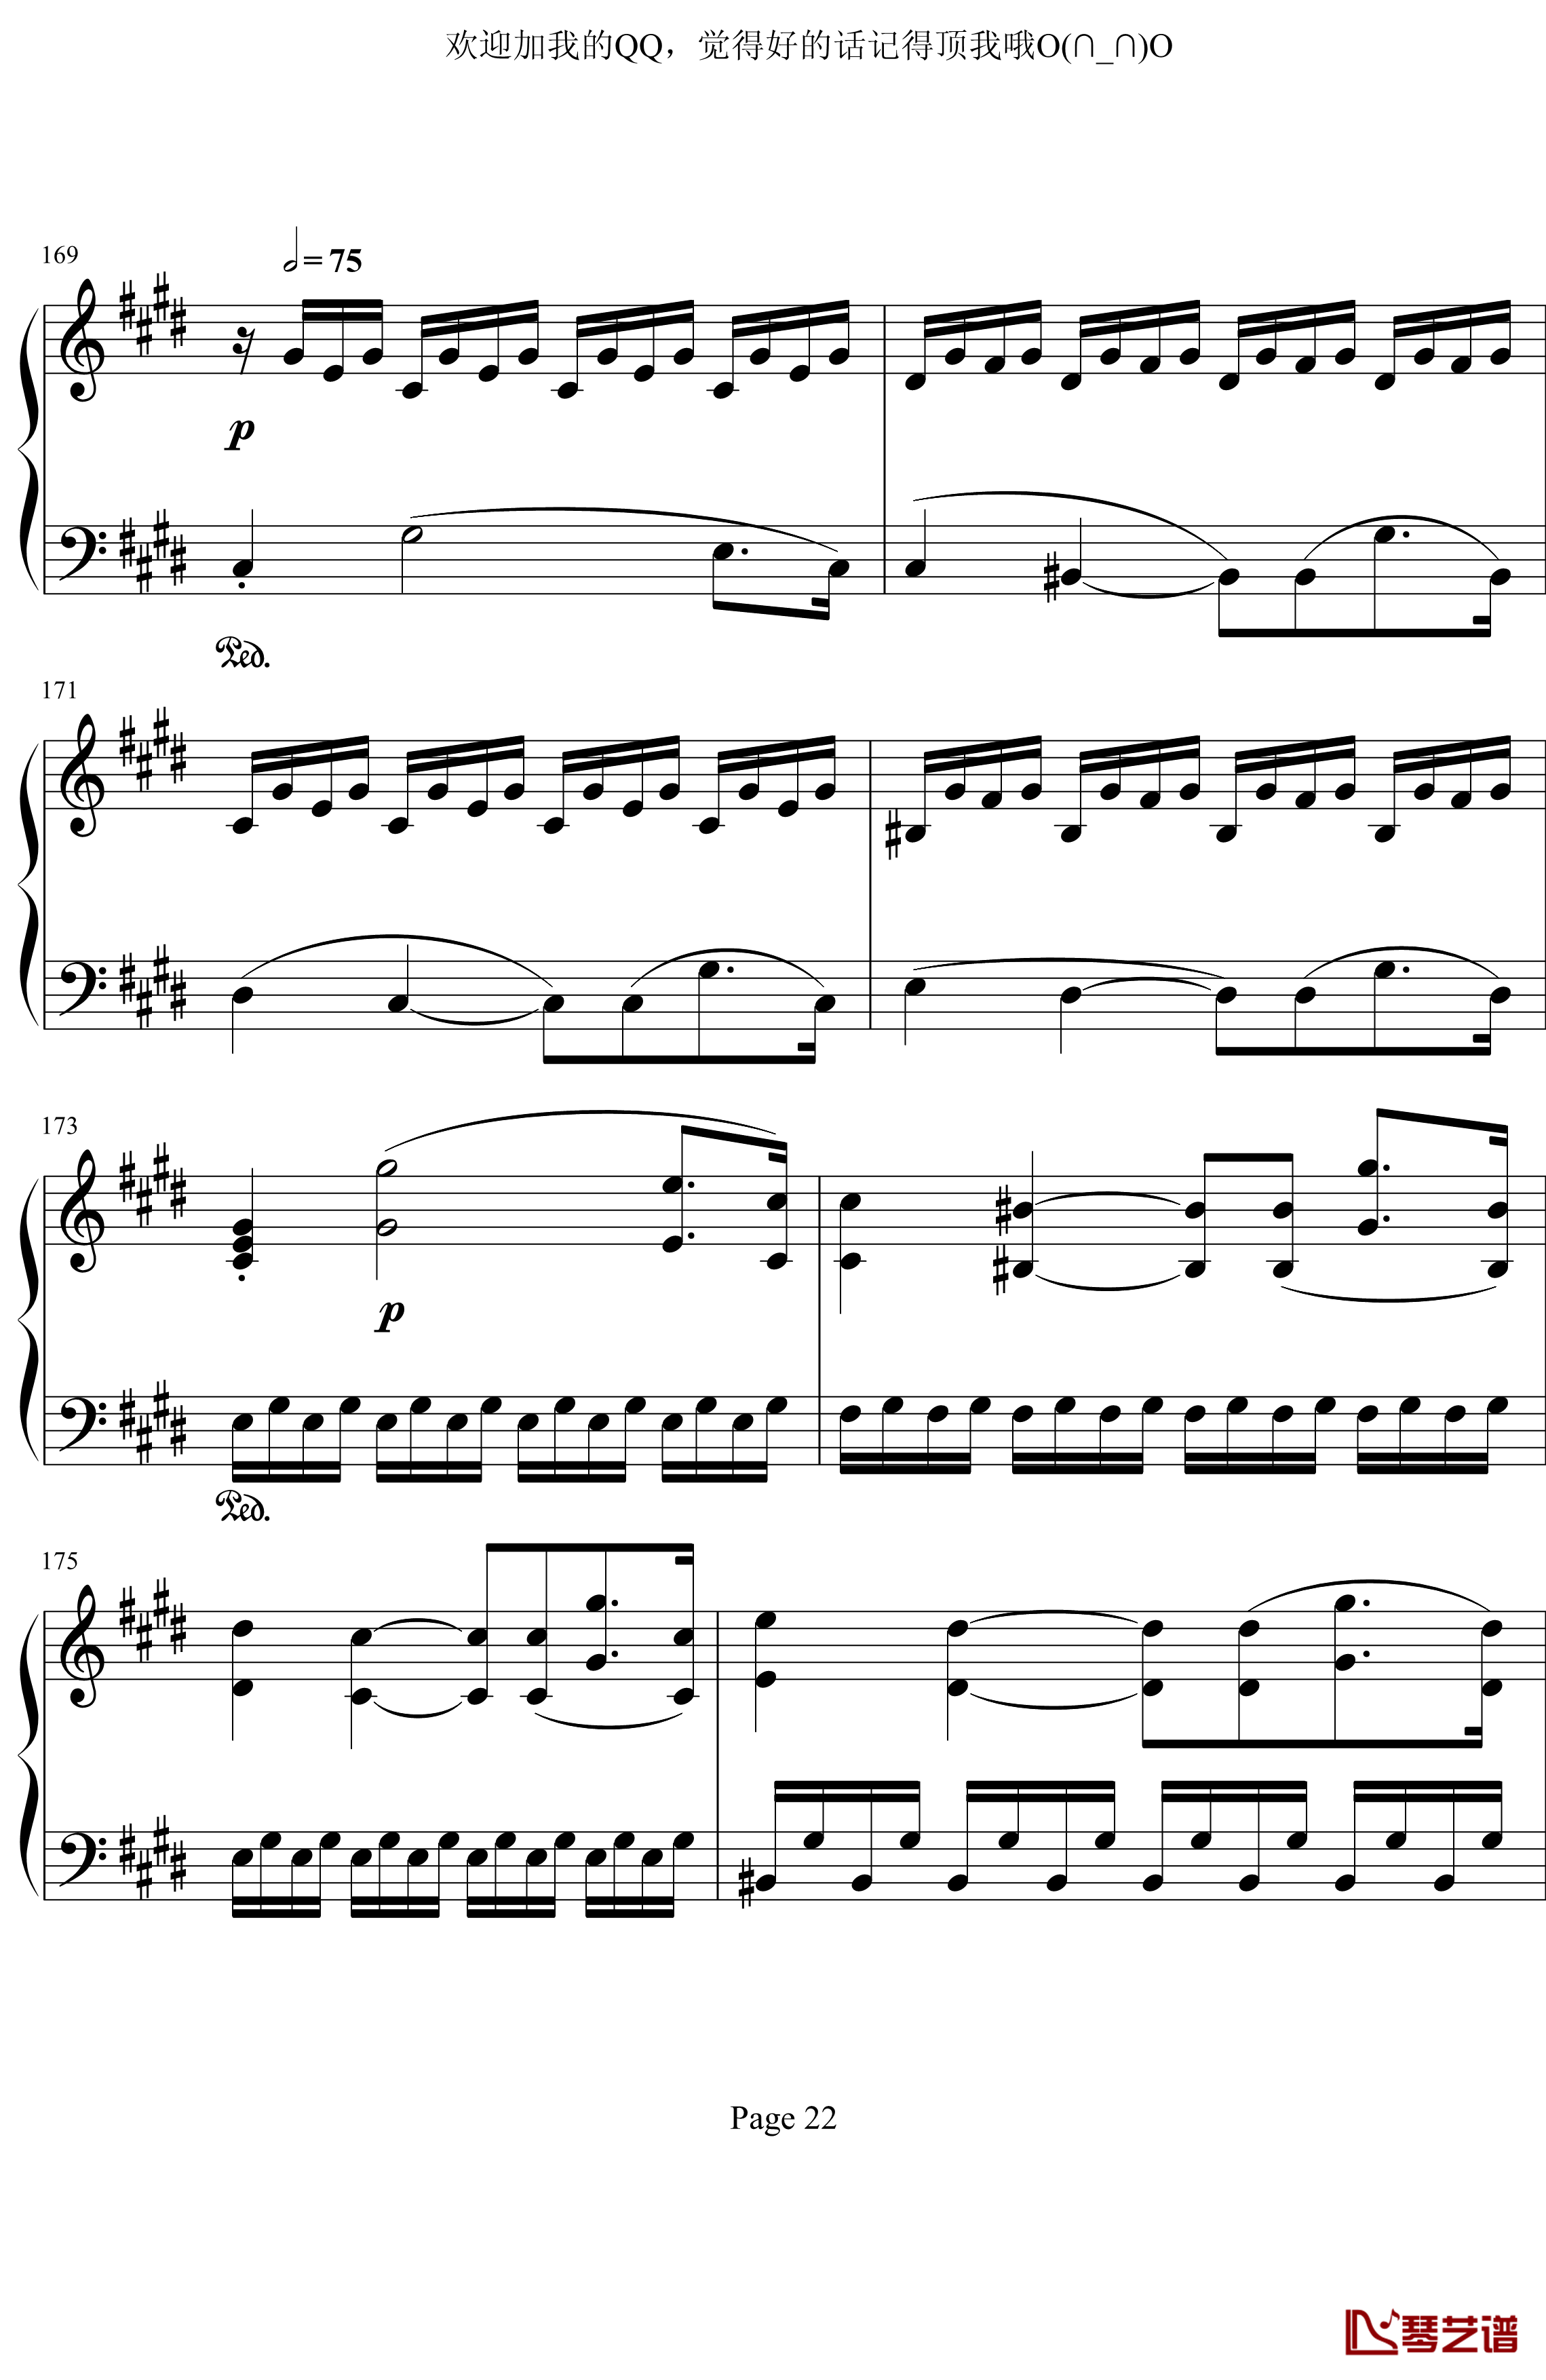 月光奏鸣曲第三乐章钢琴谱-贝多芬-beethoven22